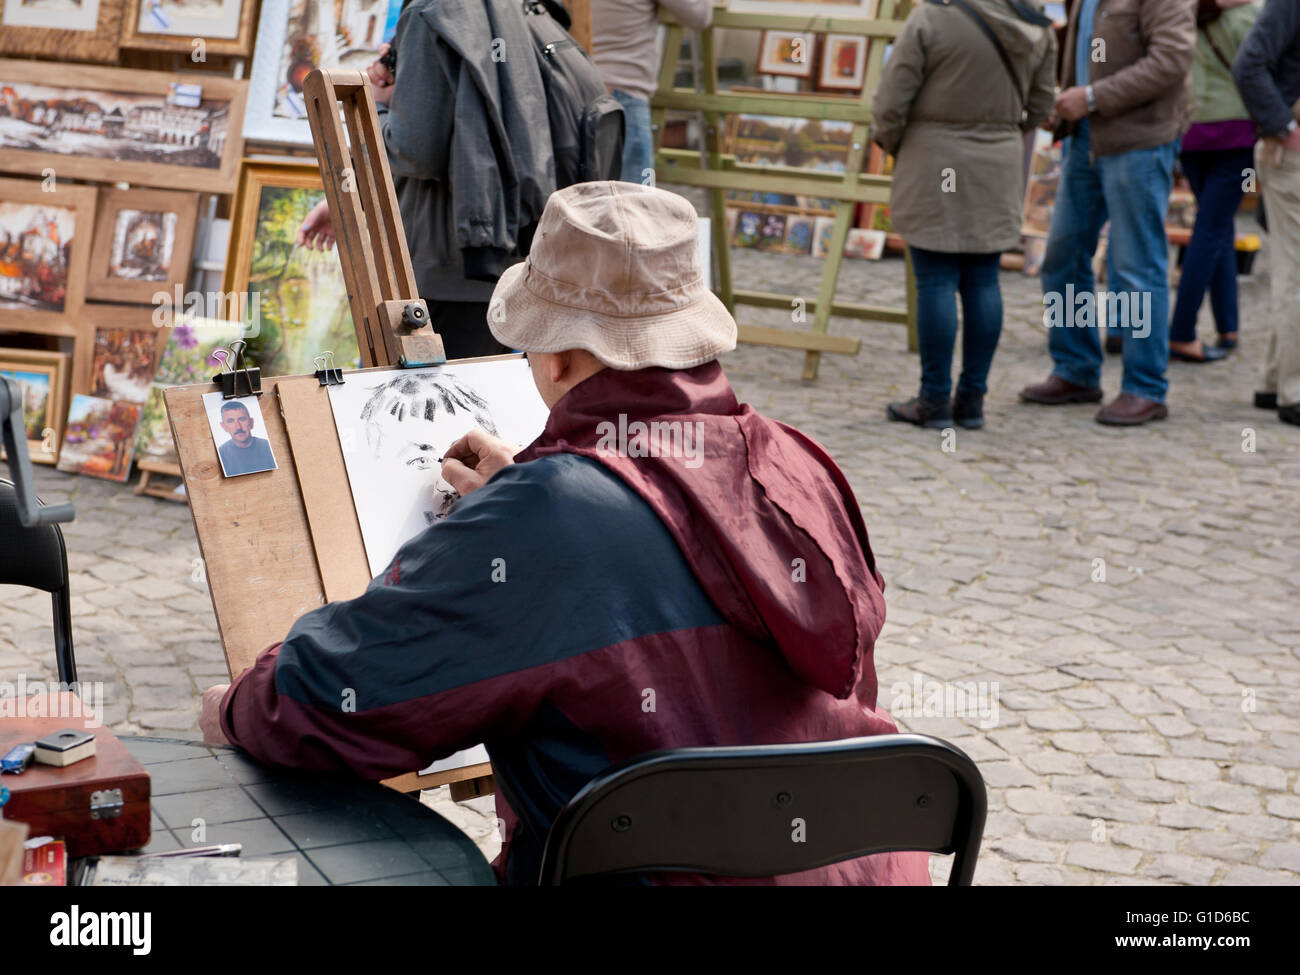 Artista Masculino hombre dibujo retrato de la imagen pequeña en el bazar en Kazimierz Dolny, de Polonia, de Europa, de turismo de Bohemia. Foto de stock